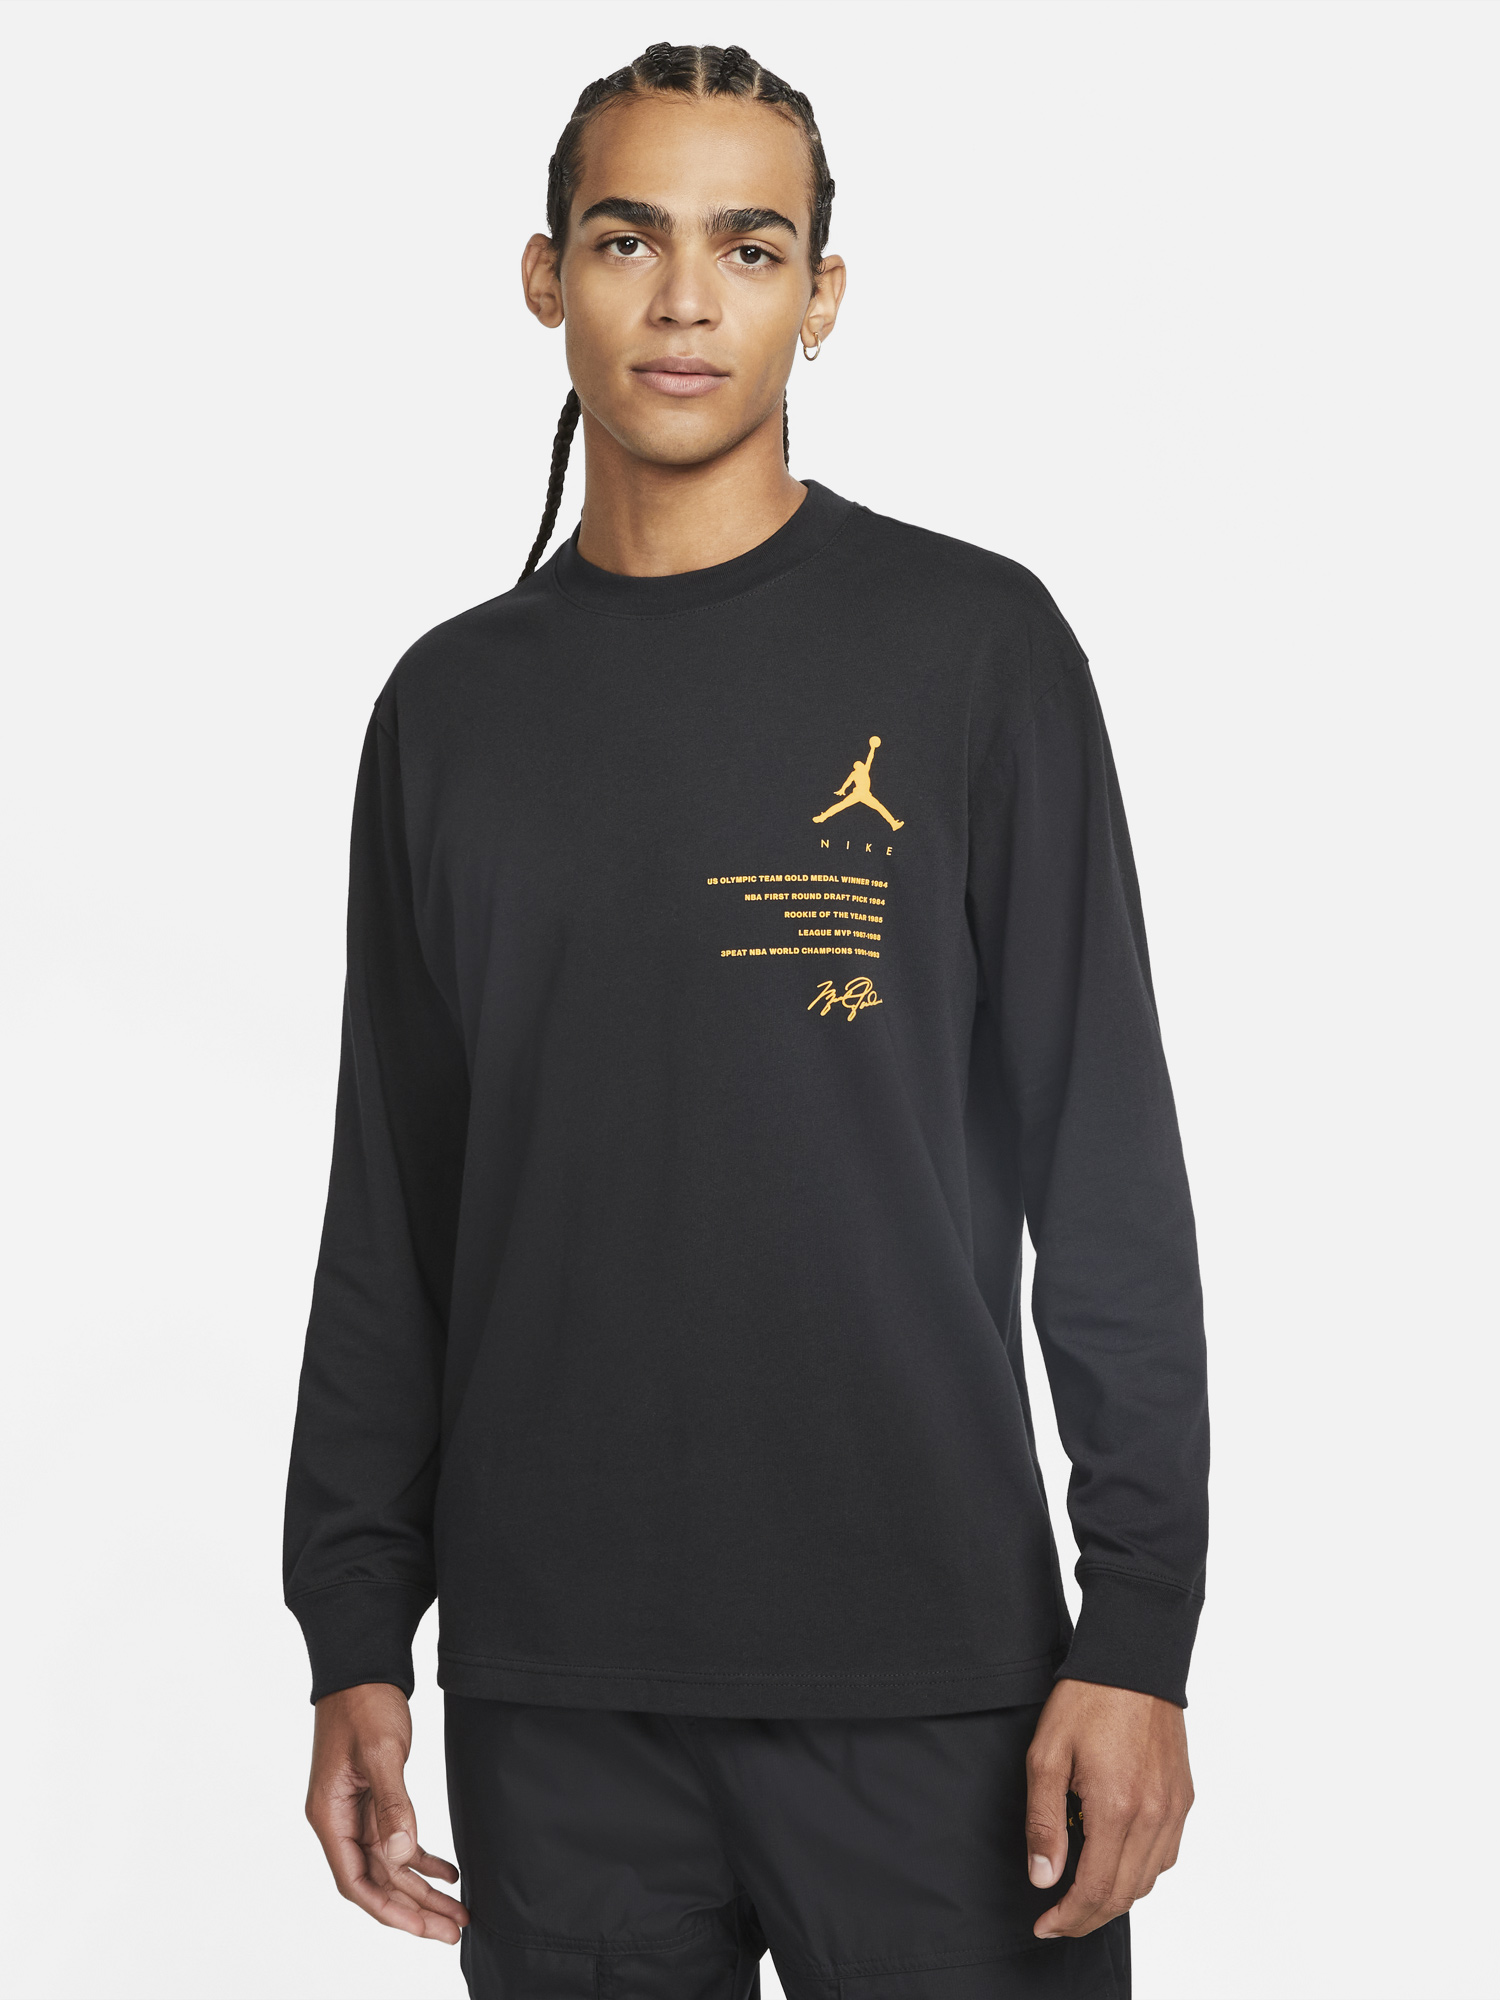 jordan-jumpman-85-long-sleeve-shirt-black-gold-1